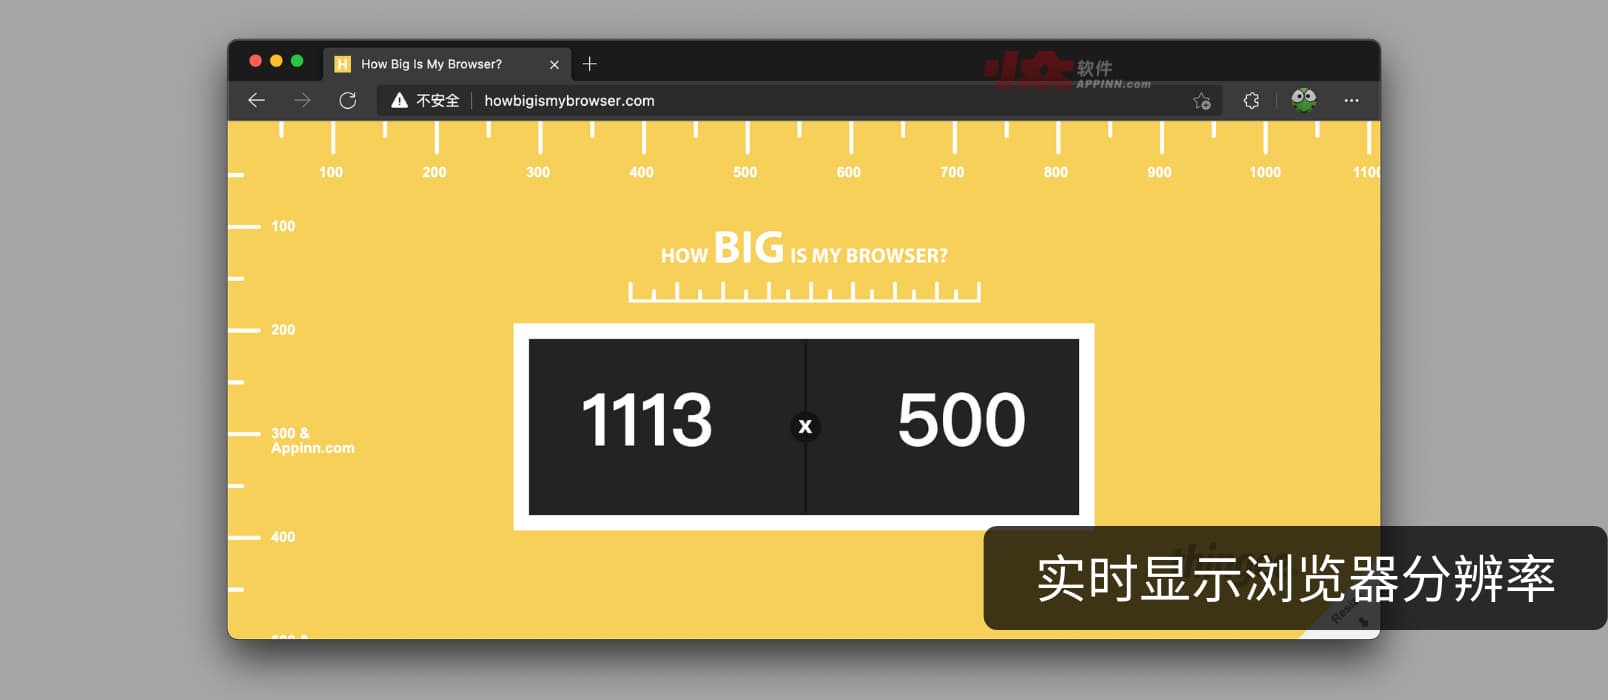 你的浏览器分辨率是多少？How Big Is My Browser？